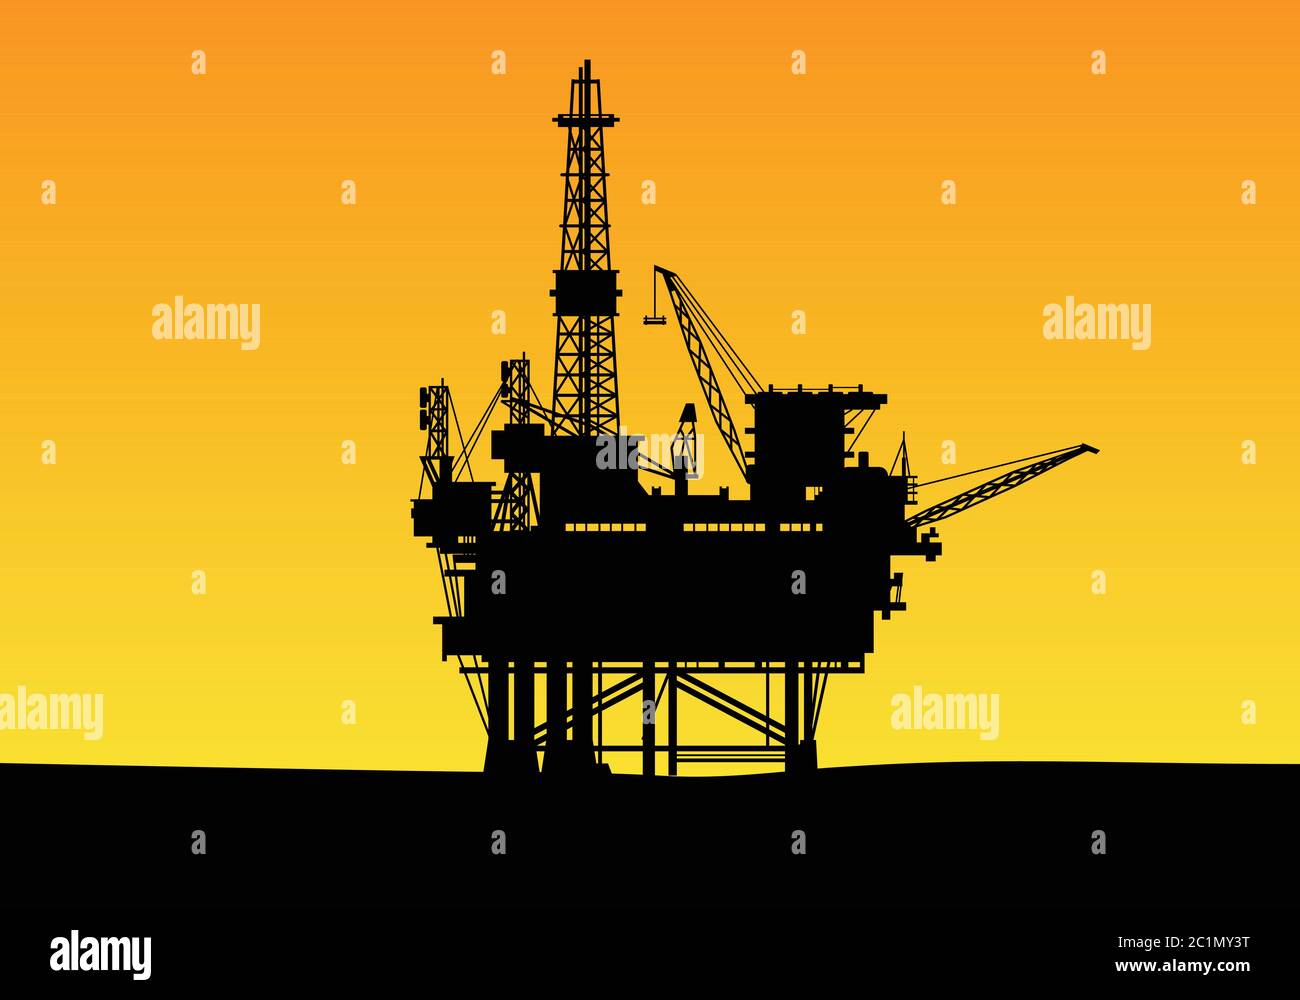 Silhouette einer Offshore-Ölbohranlage mit hohen Türmen und Kran. Geeignet für Gas-und Energieunternehmen Hintergrund Design-Vorlage. Stock Vektor